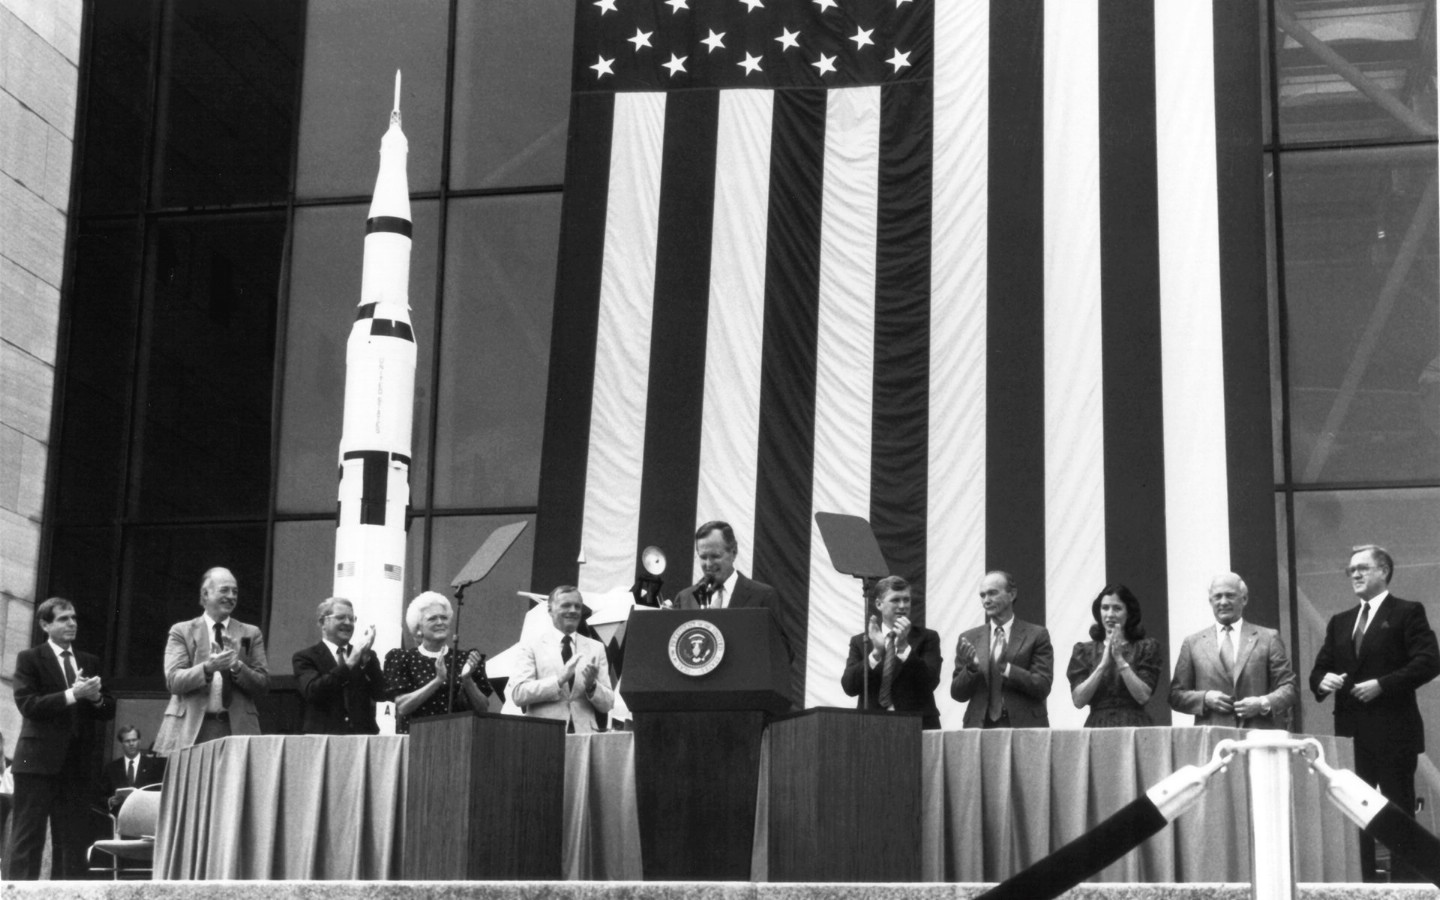 壁纸1440x900One Giant Leap for Mankind  President George Bush and Apollo 11 Astronauts 1989年老布什总统和登月英雄壁纸 阿波罗11号登月40周年纪念壁纸壁纸 阿波罗11号登月40周年纪念壁纸图片 阿波罗11号登月40周年纪念壁纸素材 人文壁纸 人文图库 人文图片素材桌面壁纸